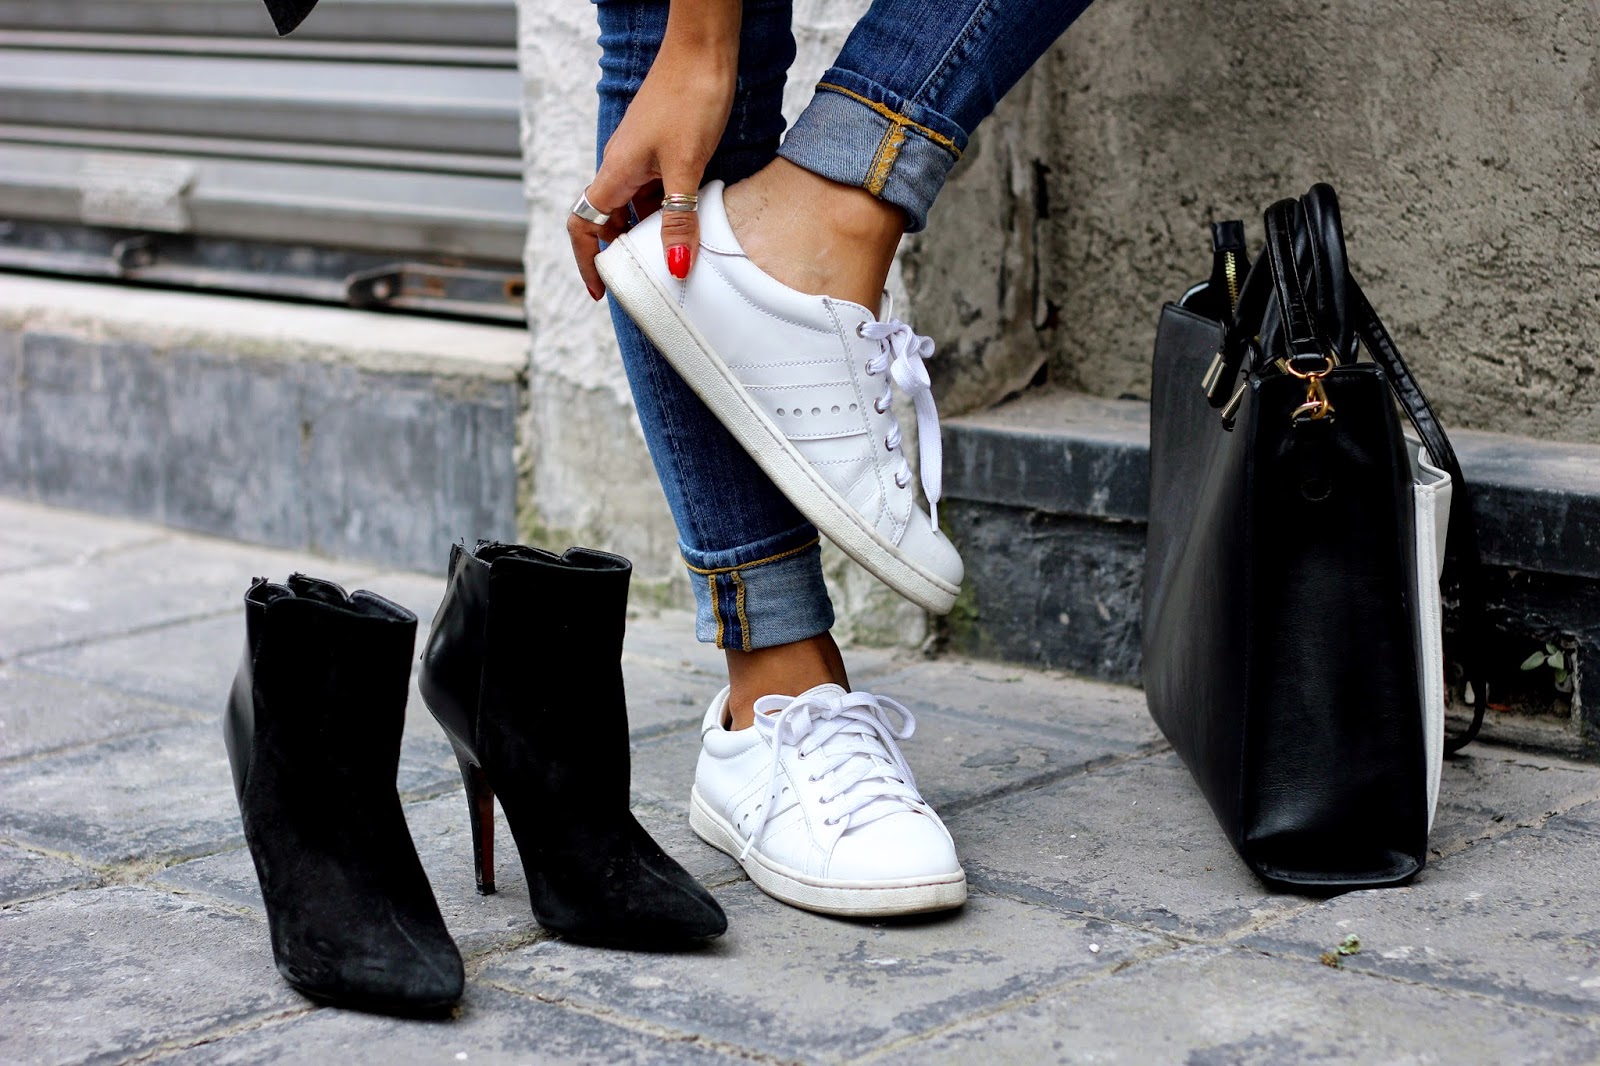 wear your trusty white sneakers 